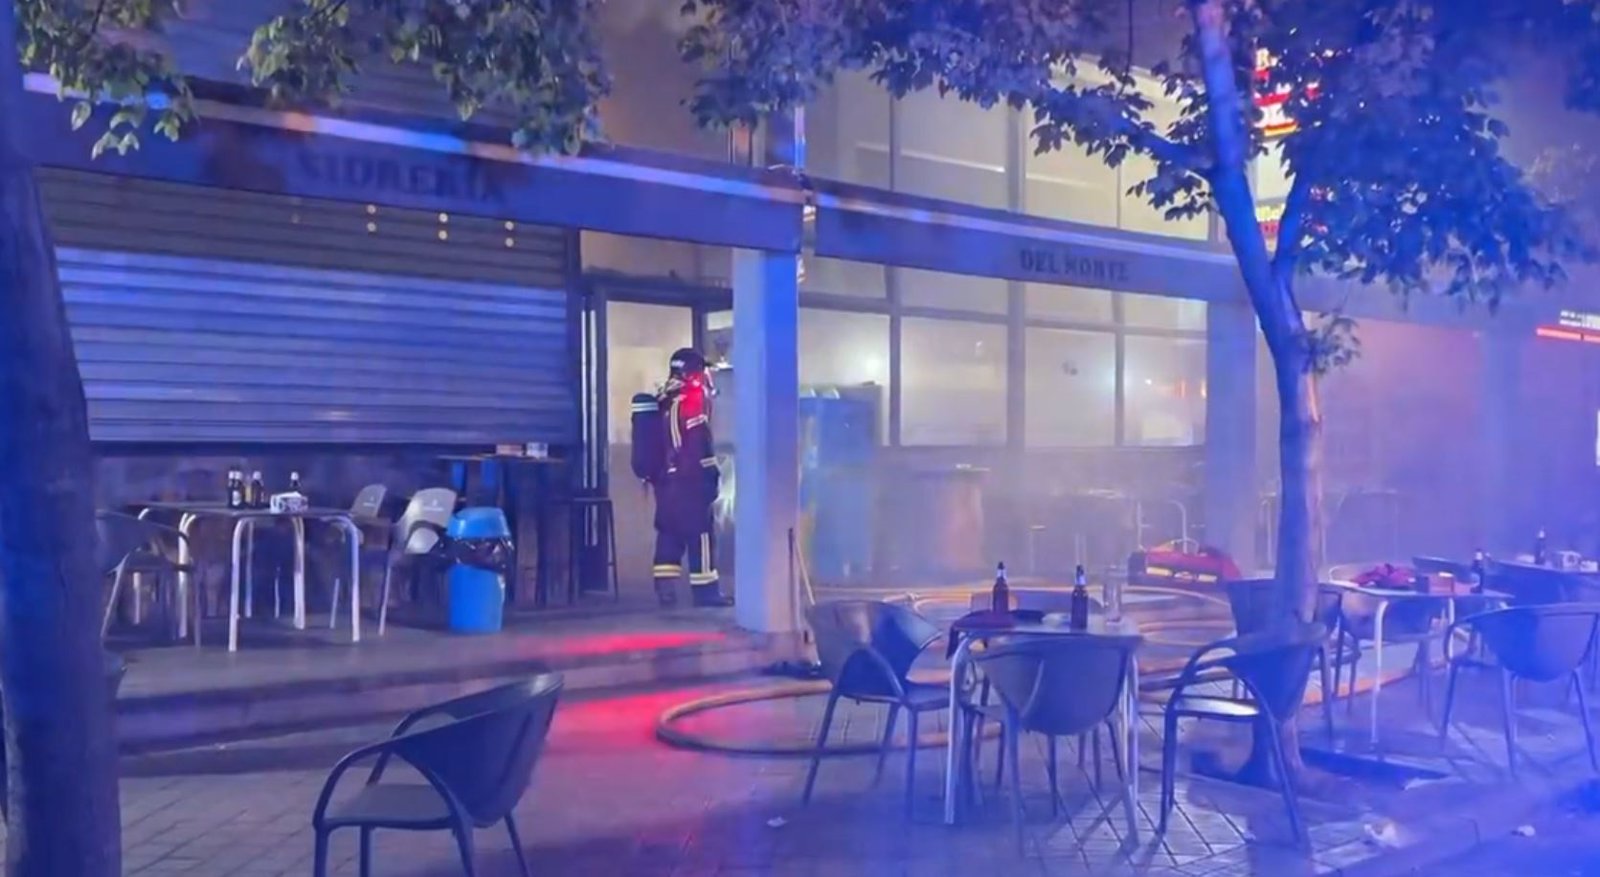 Extinguido un incendio en un restaurante en Villaverde